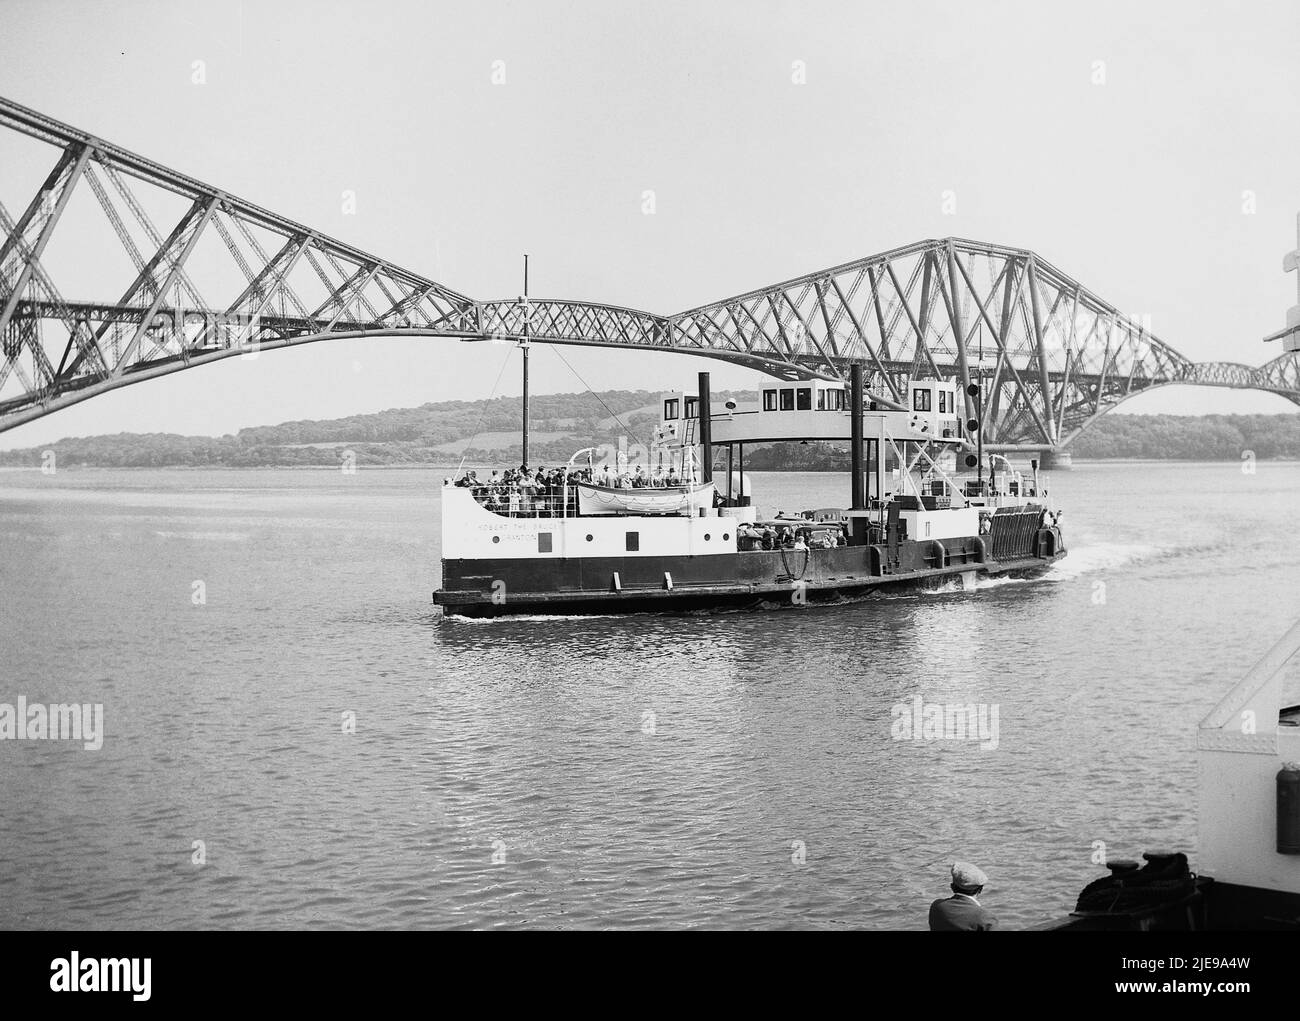 1956, vista storica da quest'epoca del traghetto Robert the Bruce sull'acqua accanto al Forth Bridge, la prima grande struttura in acciaio al mondo. Ponte ferroviario a sbalzo attraverso il Firth of Forth nella parte est della Scozia, vicino Edimburgo, la sua apertura nel 1890 è stata una pietra miliare nella moderna ingegneria civile ferroviaria ed è il ponte a sbalzo più lungo del mondo. Il traghetto, Robert the Bruce, fu costruito nel 1934 dai costruttori navali di Clyde, William Denny, e poteva trasportare 500 passeggeri e 28 auto. Smise di funzionare nel 1964 quando il Forth Road Bridge si aprì. Foto Stock